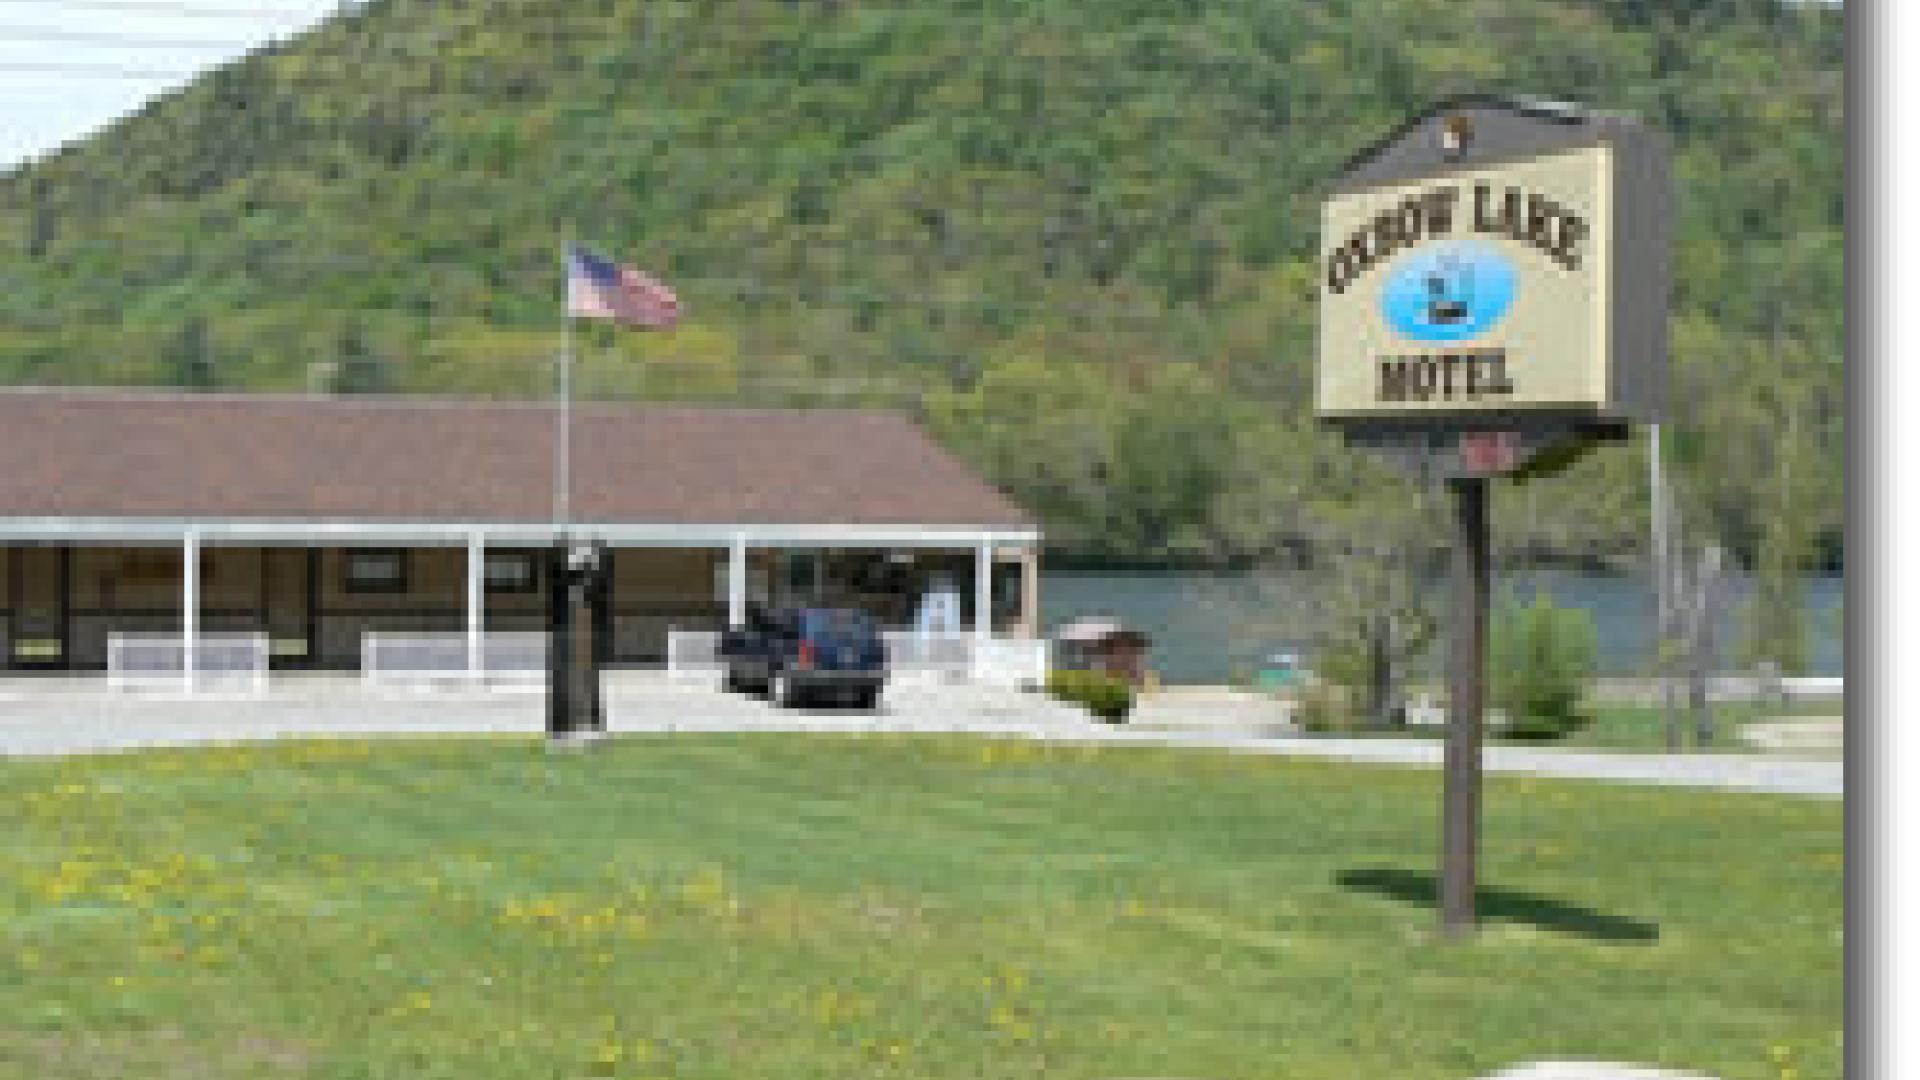 Oxbow Lake Motel